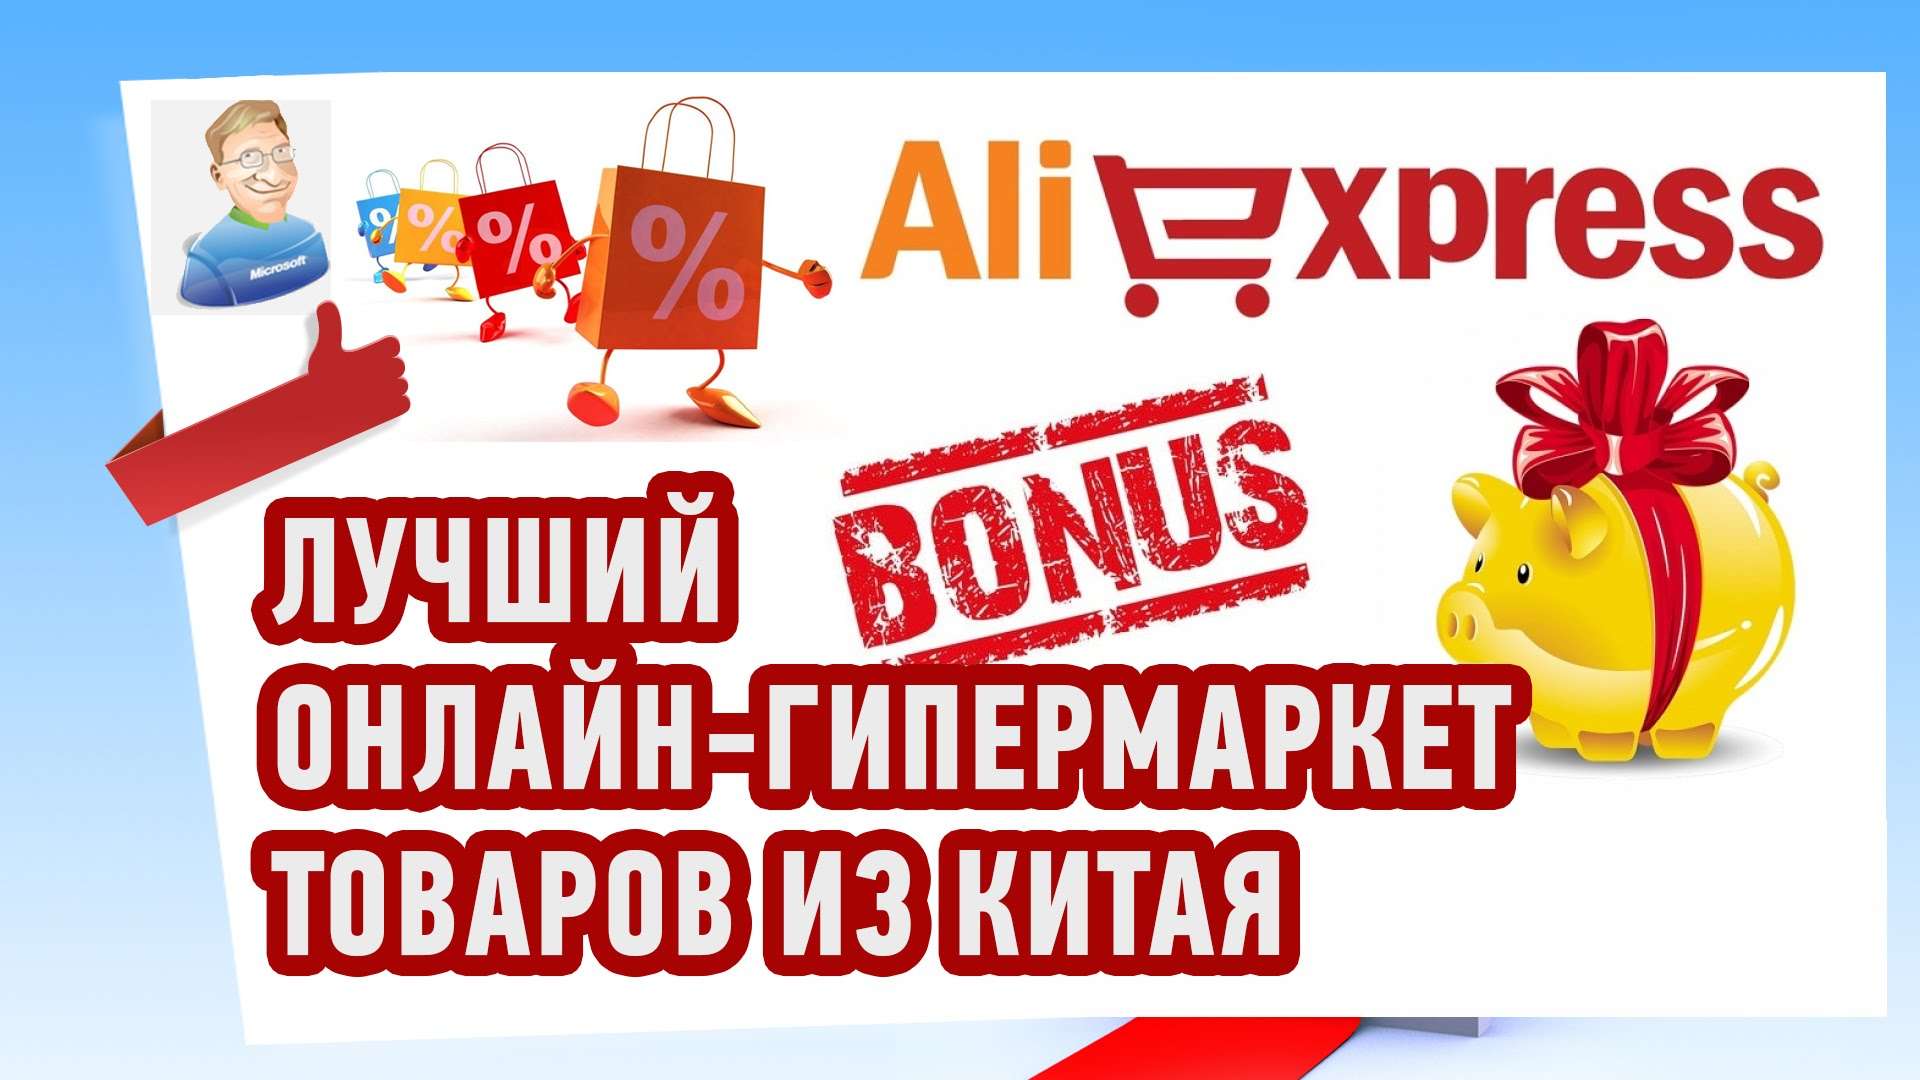 AliExpress (Али Экспресс) — Интернет-магазин качественных и дешевых товаров из Китая!